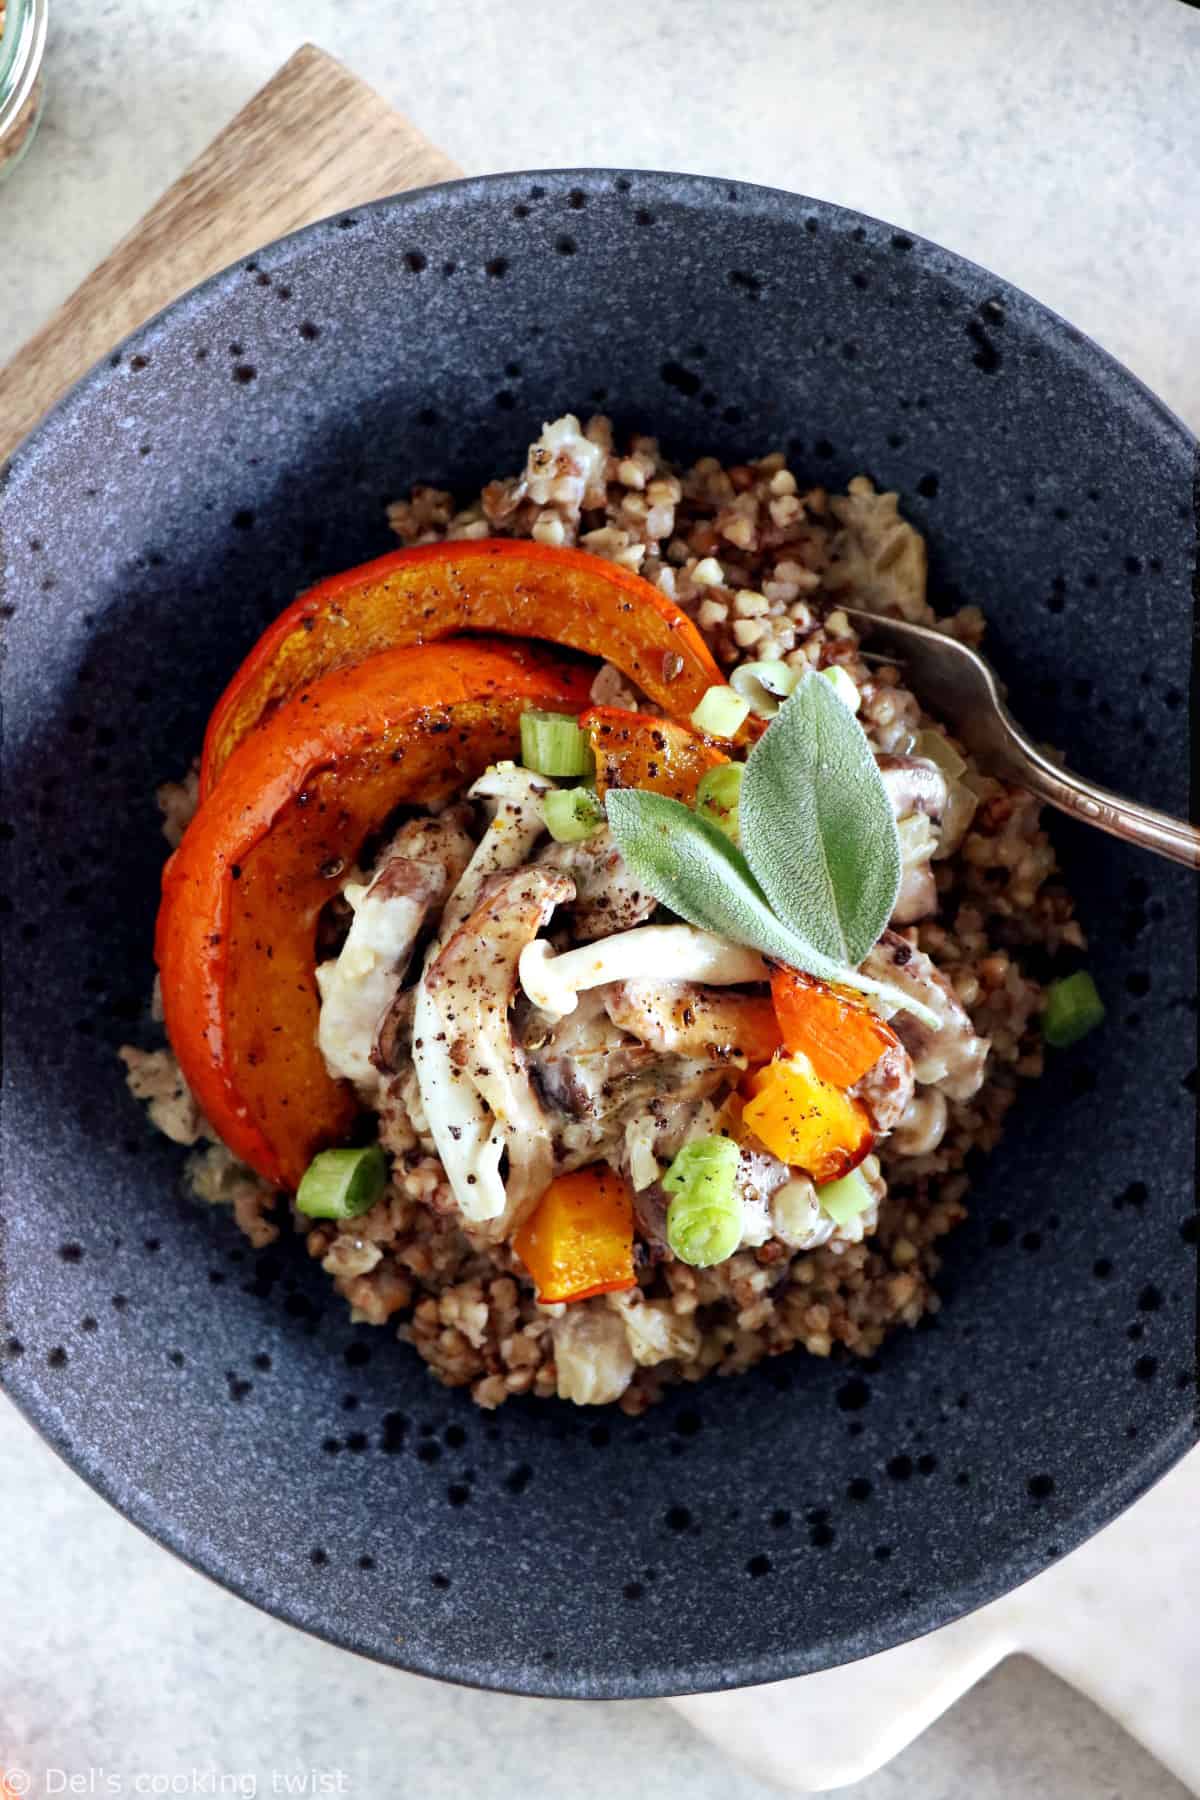 Pour changer du risotto, découvrez ce risotto de sarrasin aux champignons et potimarron. Un plat original à la fois élégant et réconfortant.